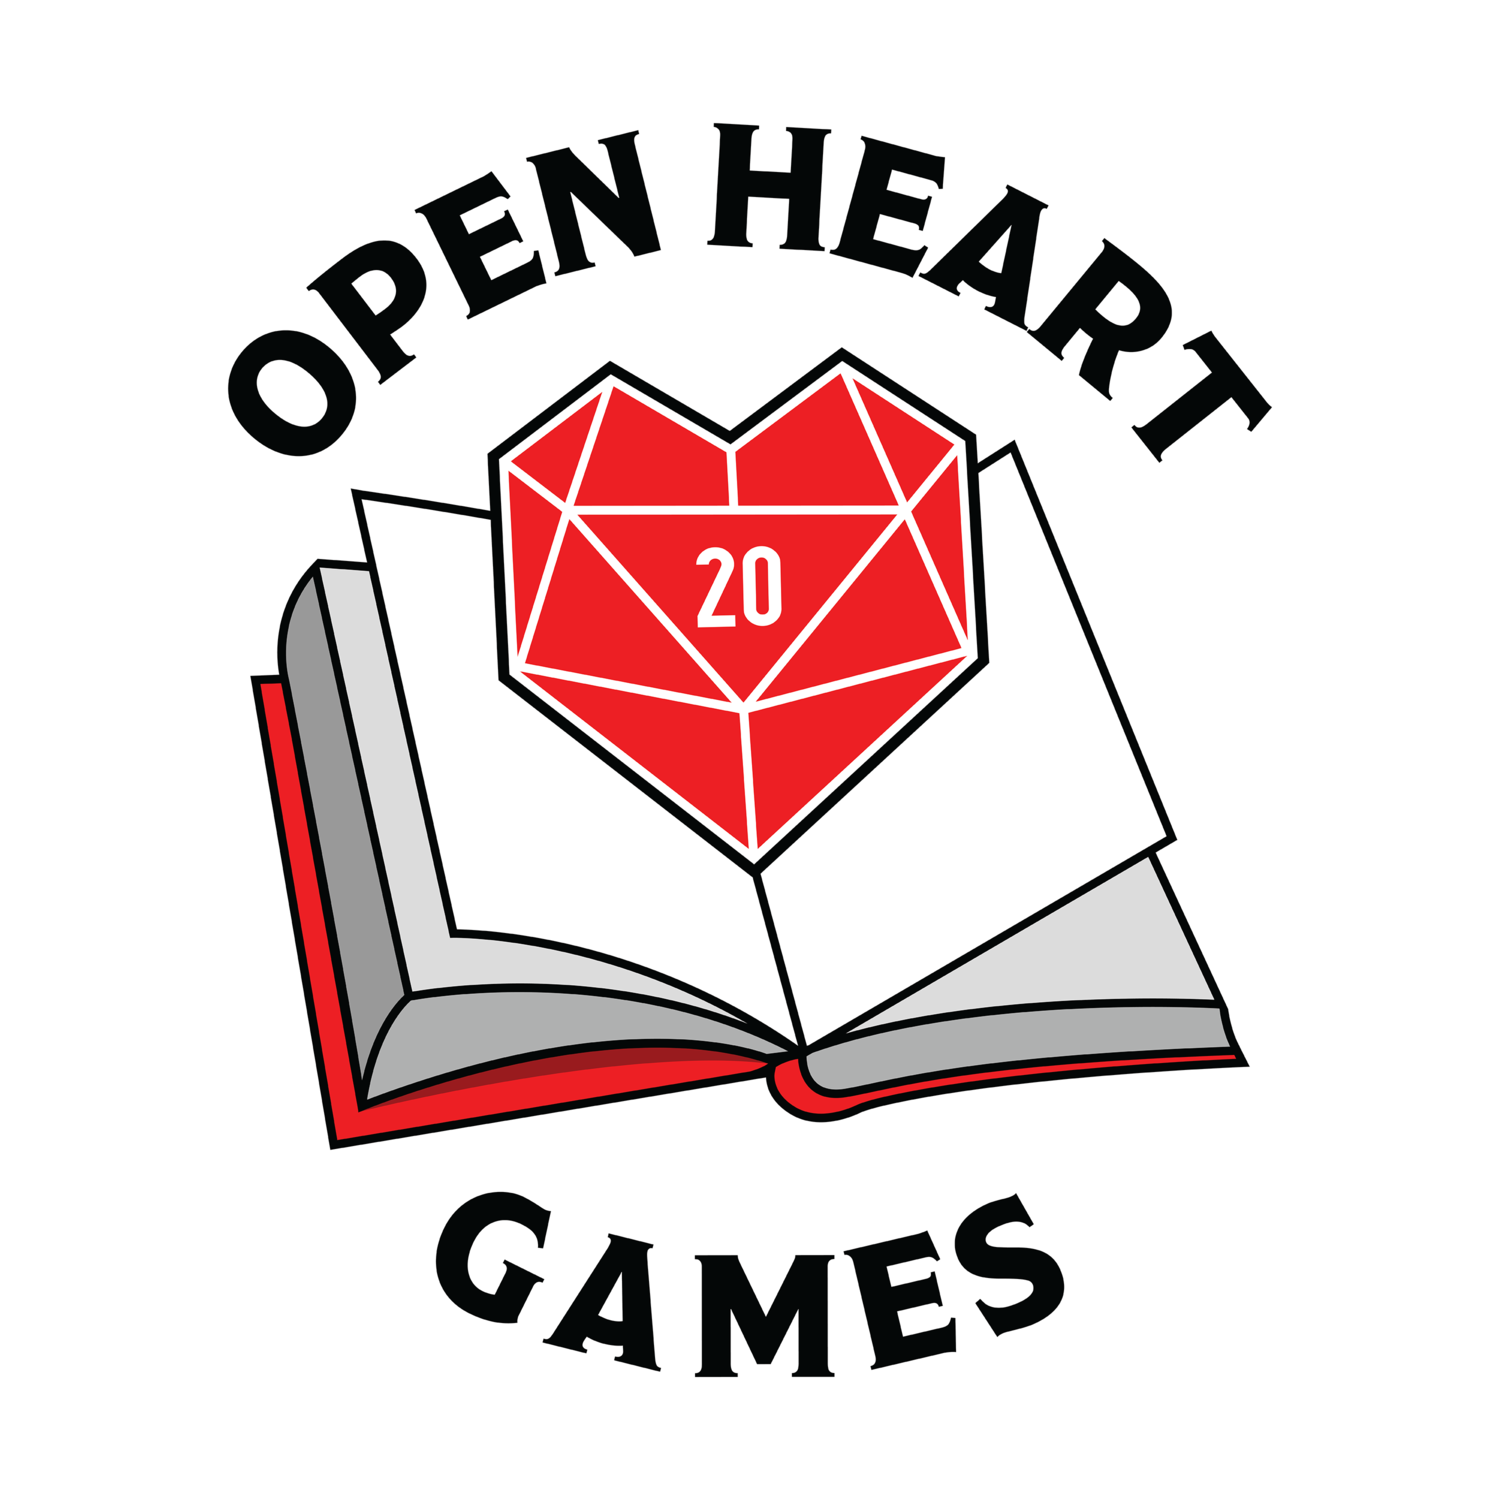 Open Heart Games